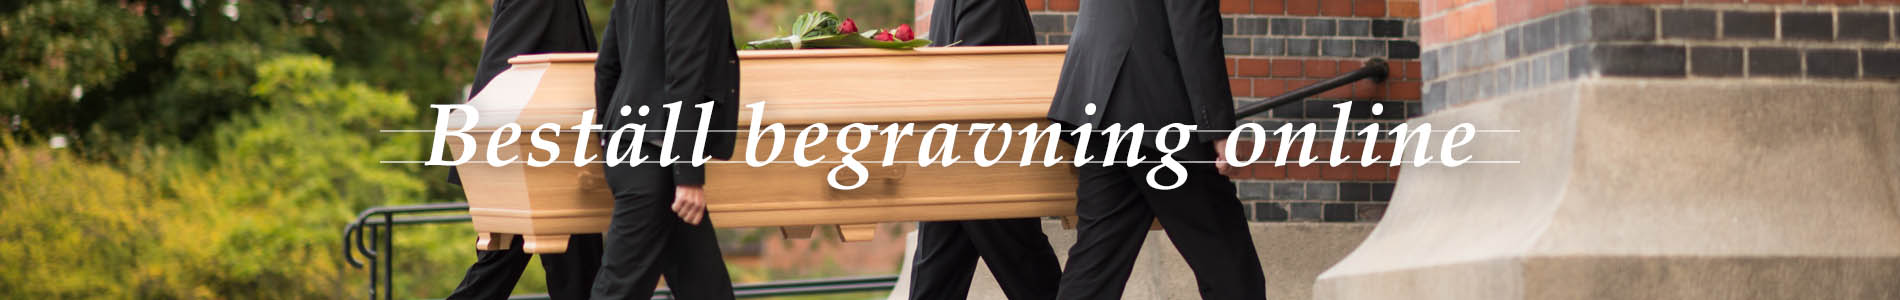 Axelssons Begravningsbyrå Löddeköpinge: Beställ begravning online